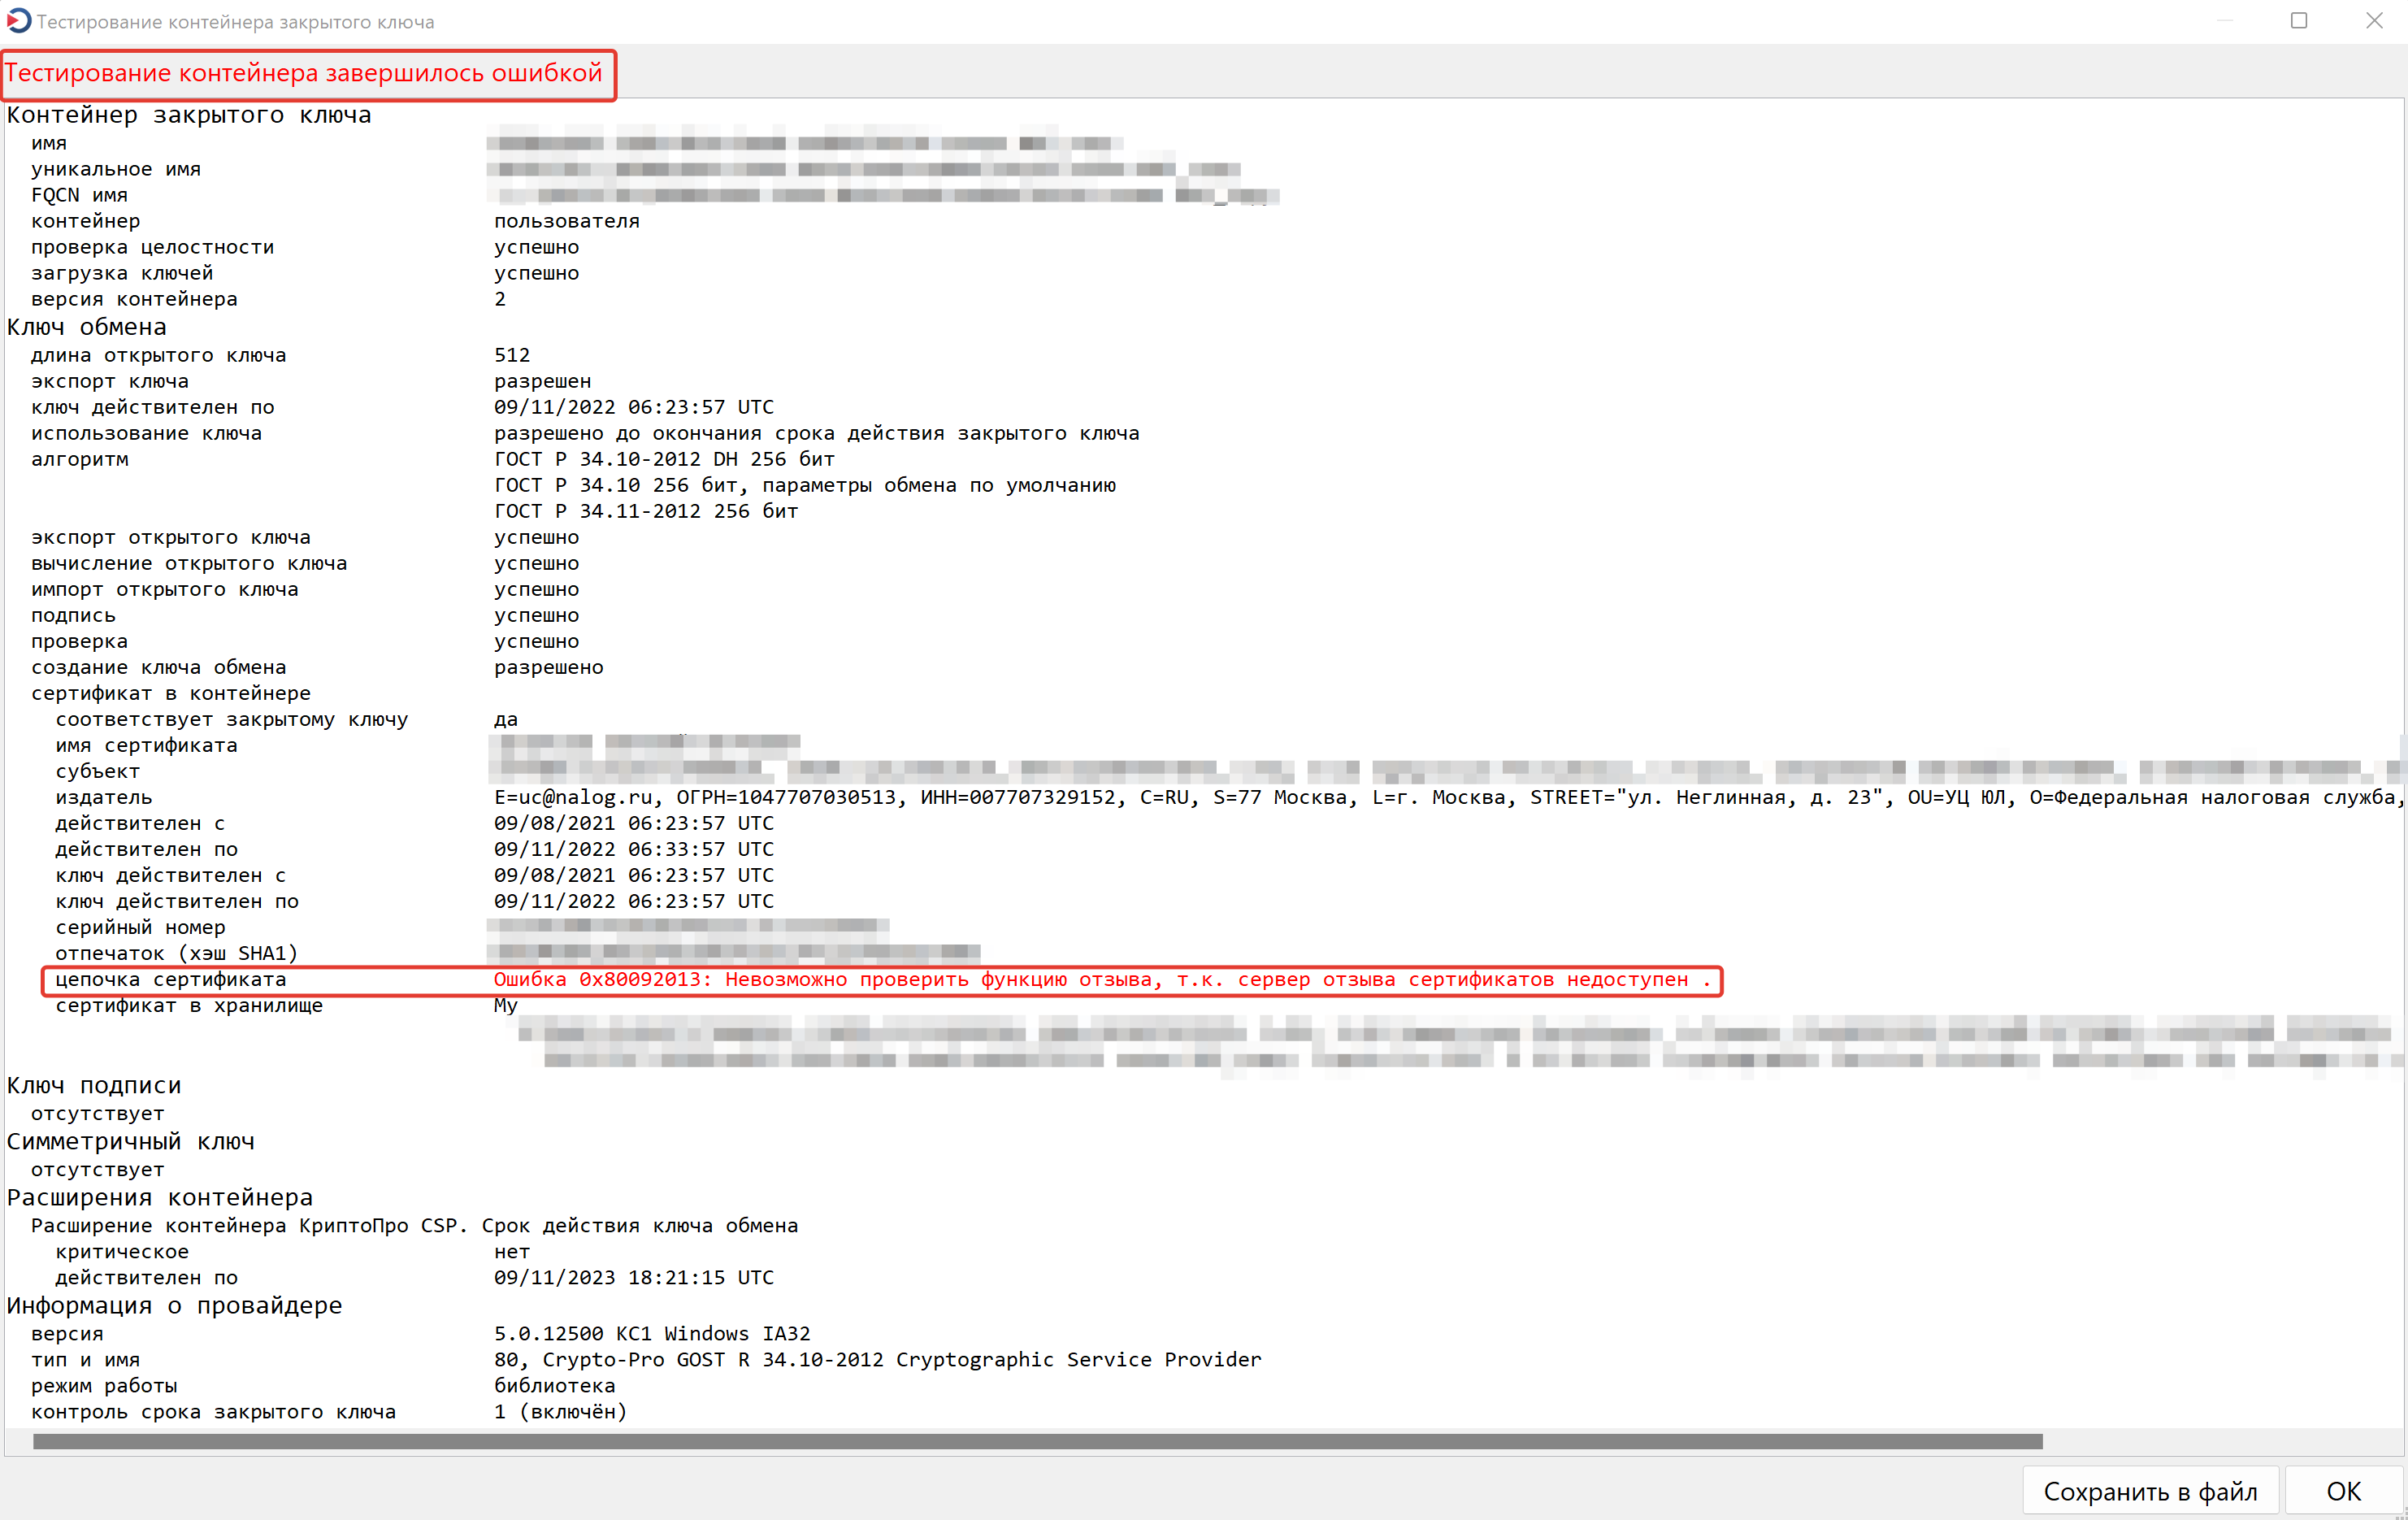 Окно программы "Инструменты КриптоПро" с ошибкой при тестировании контейнера ЭЦП